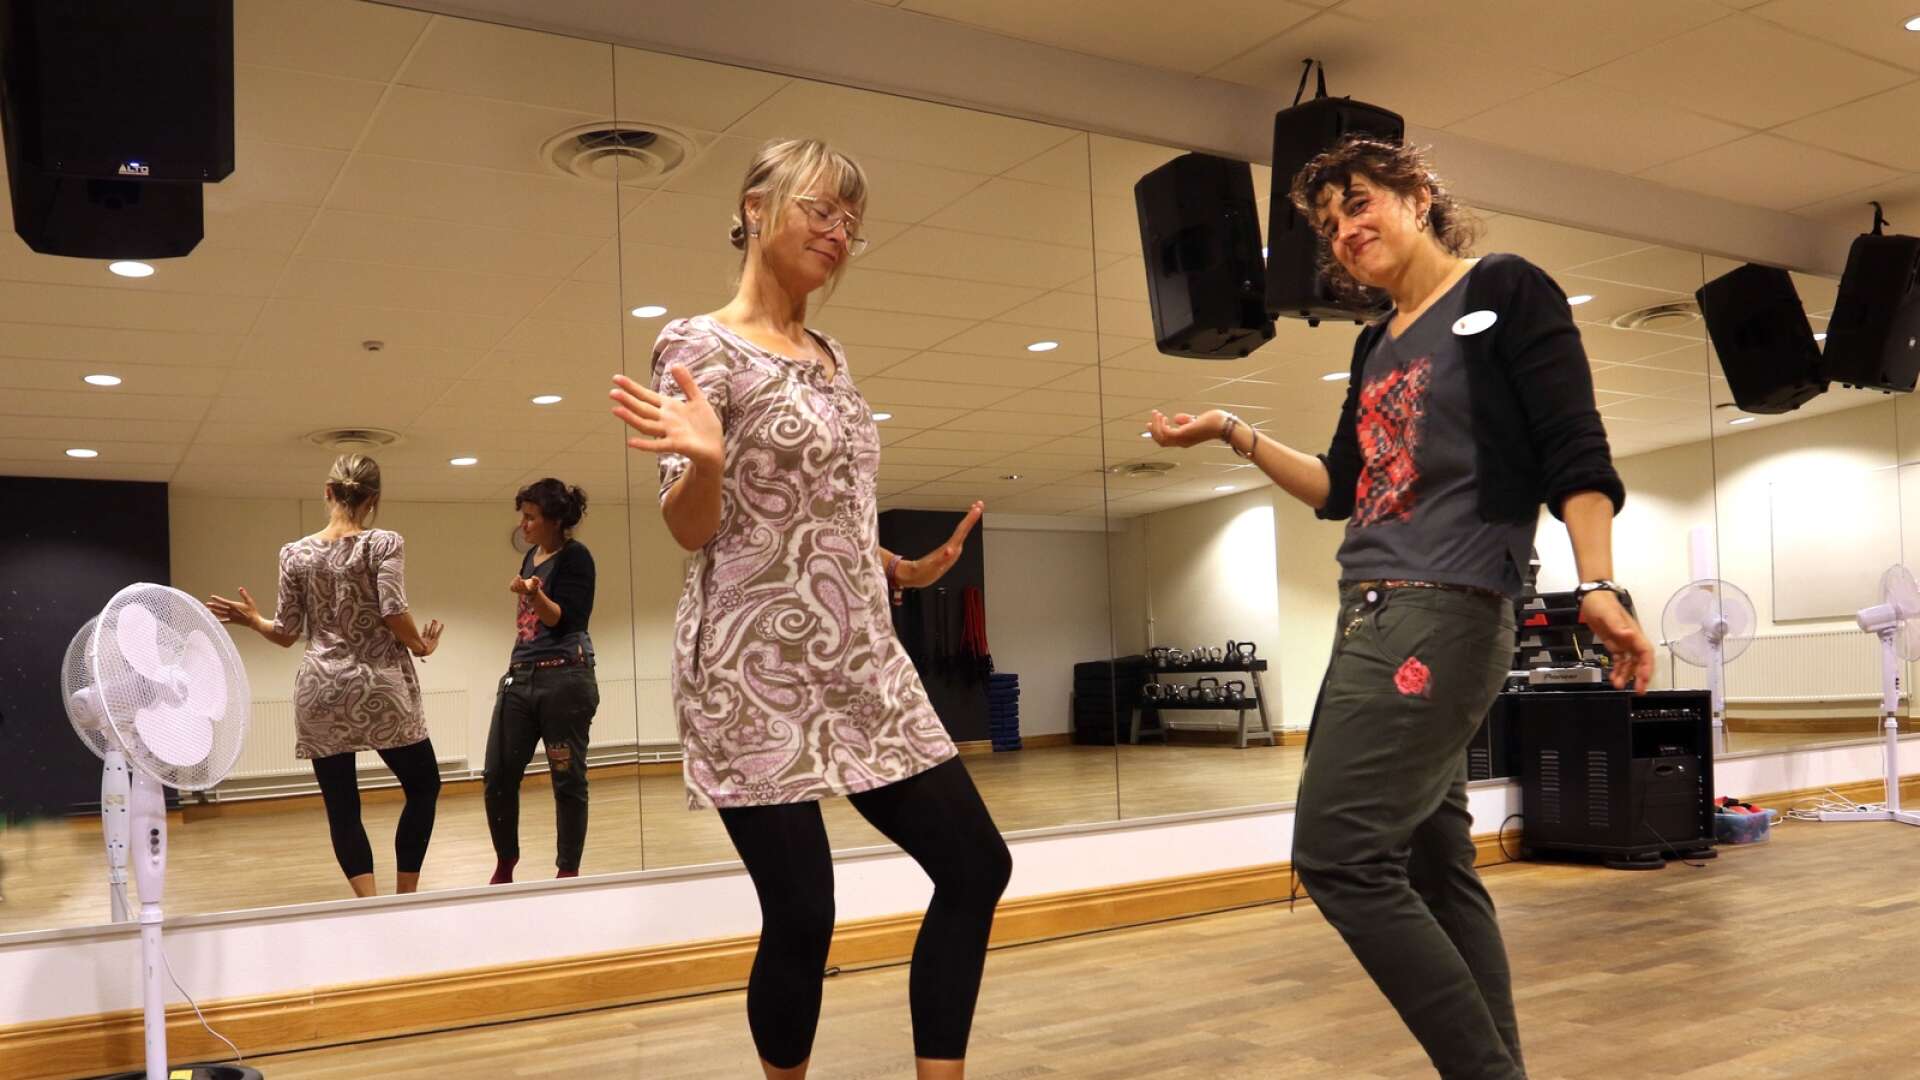 Medborgarskolan, Actic och Språkvän anordnar dansworkshops två onsdagar i rad. Anna van der Tol och Gabriella Alvarez Roosvall hoppas att dansen kan skapa en gemenskap.